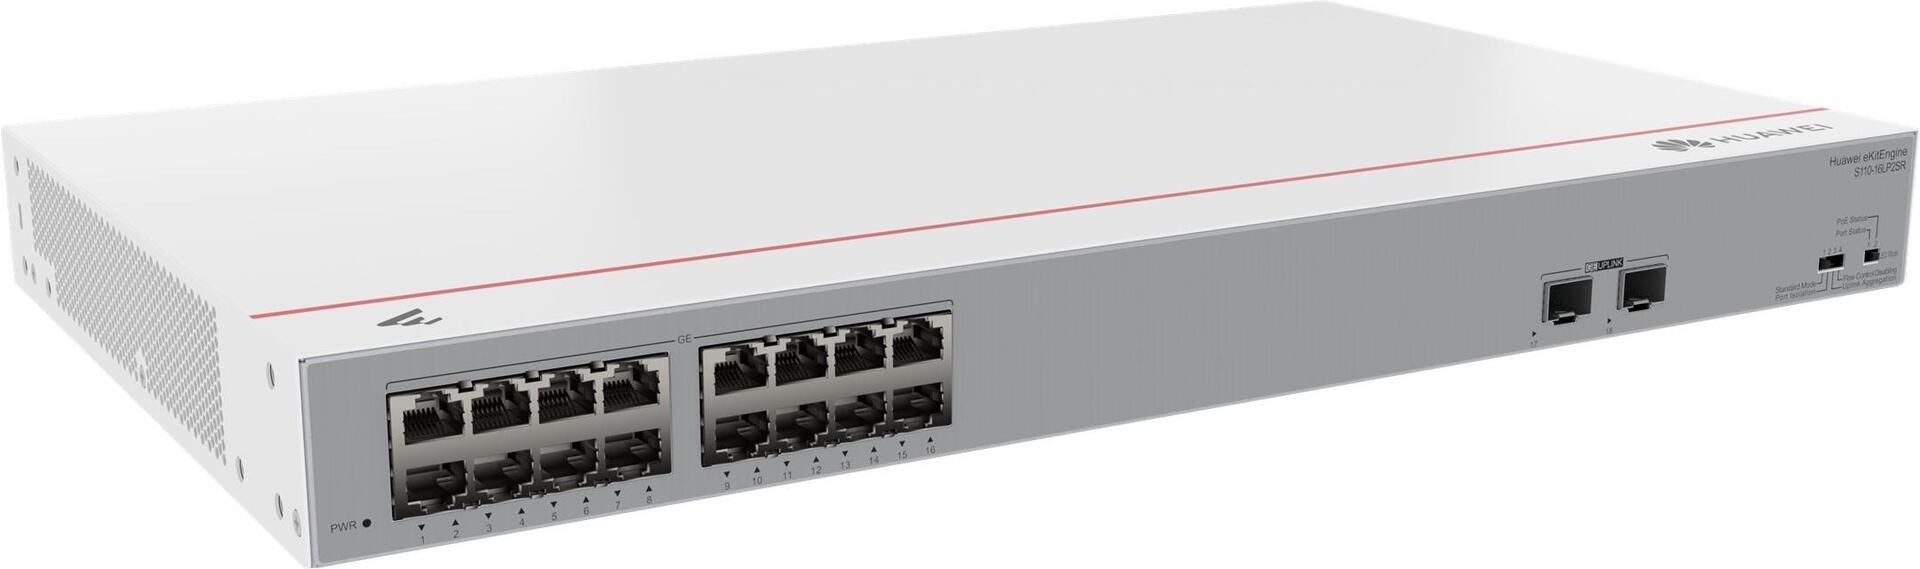 HUAWEI Switch S110-16LP2SR 16x10/100/1000BASE-T ports 2xGE SFP ports PoE+ AC power eKit DE (P) (98012197)